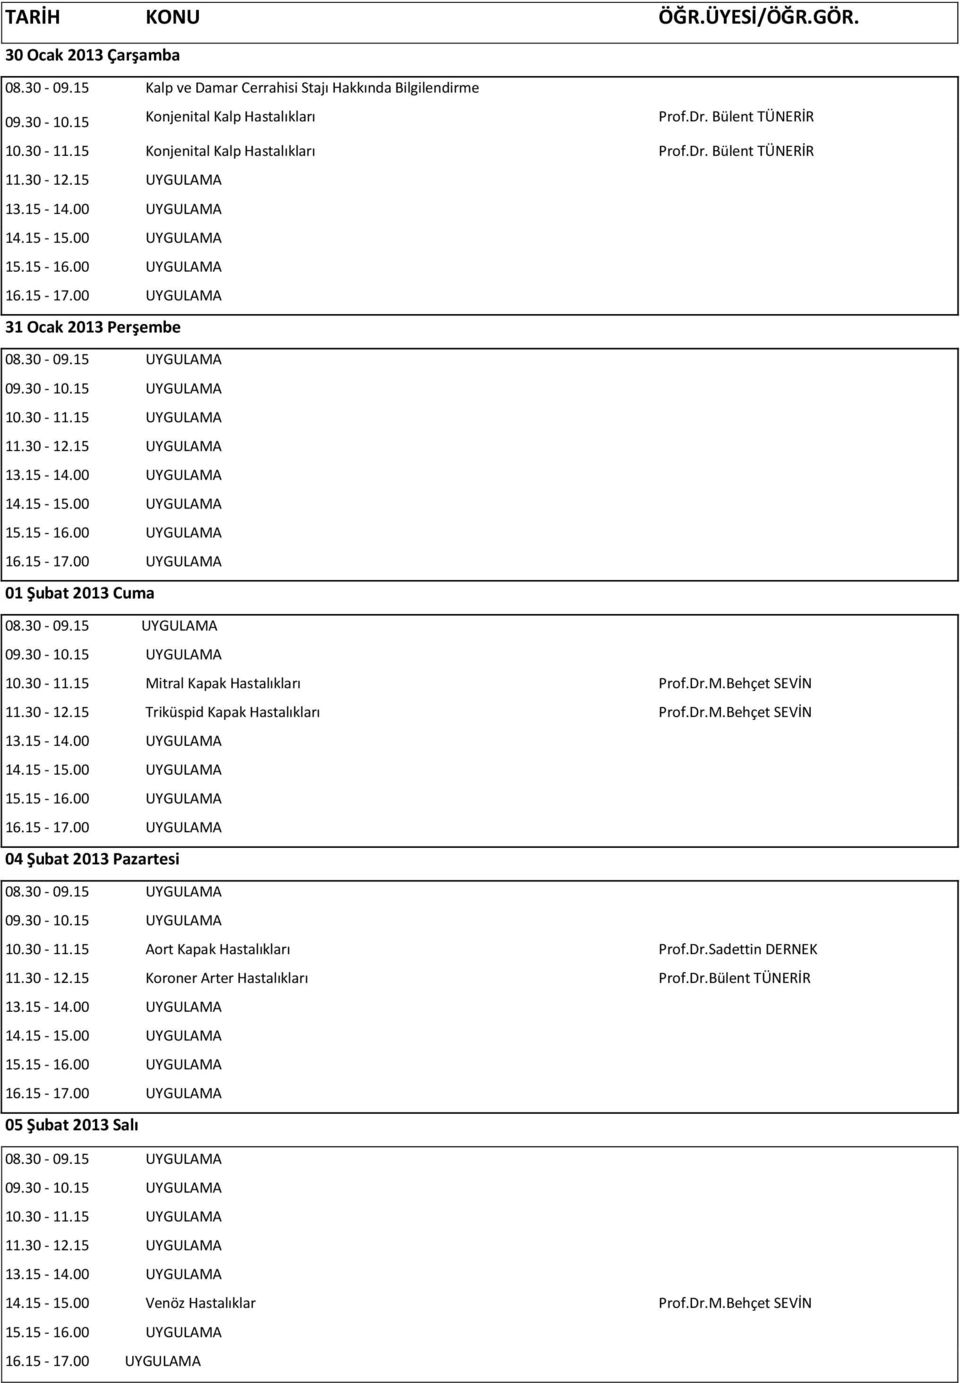 Dr.M.Behçet SEVİN 11.30-12.15 Triküspid Kapak Hastalıkları Prof.Dr.M.Behçet SEVİN 04 Şubat 2013 Pazartesi 10.30-11.15 Aort Kapak Hastalıkları Prof.Dr.Sadettin DERNEK 11.